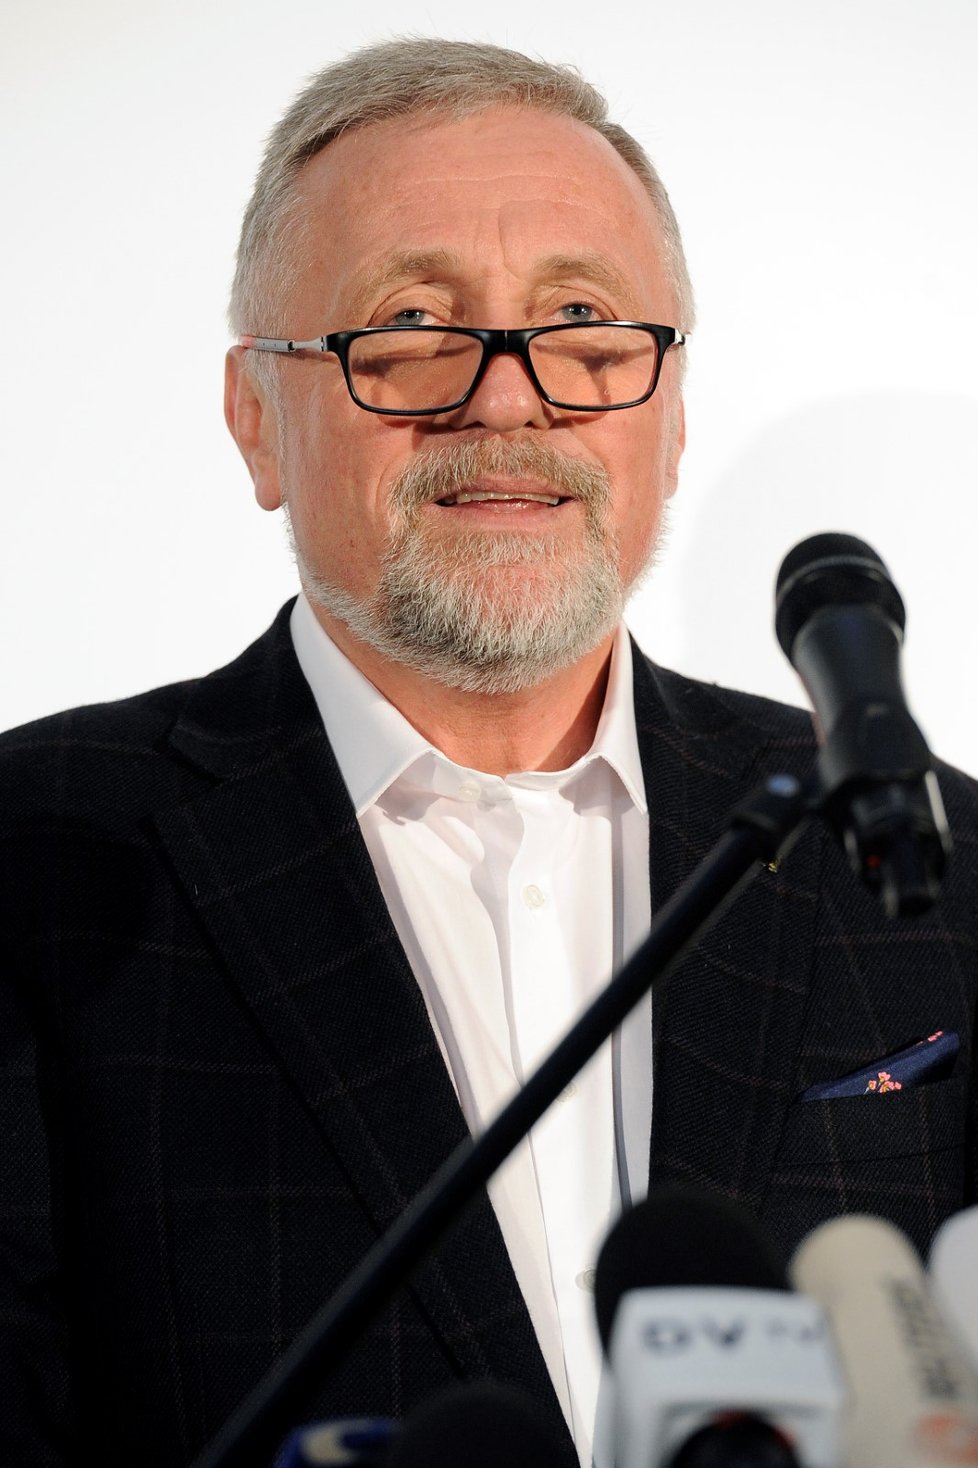 Mirek Topolánek jako kandidát na prezidenta